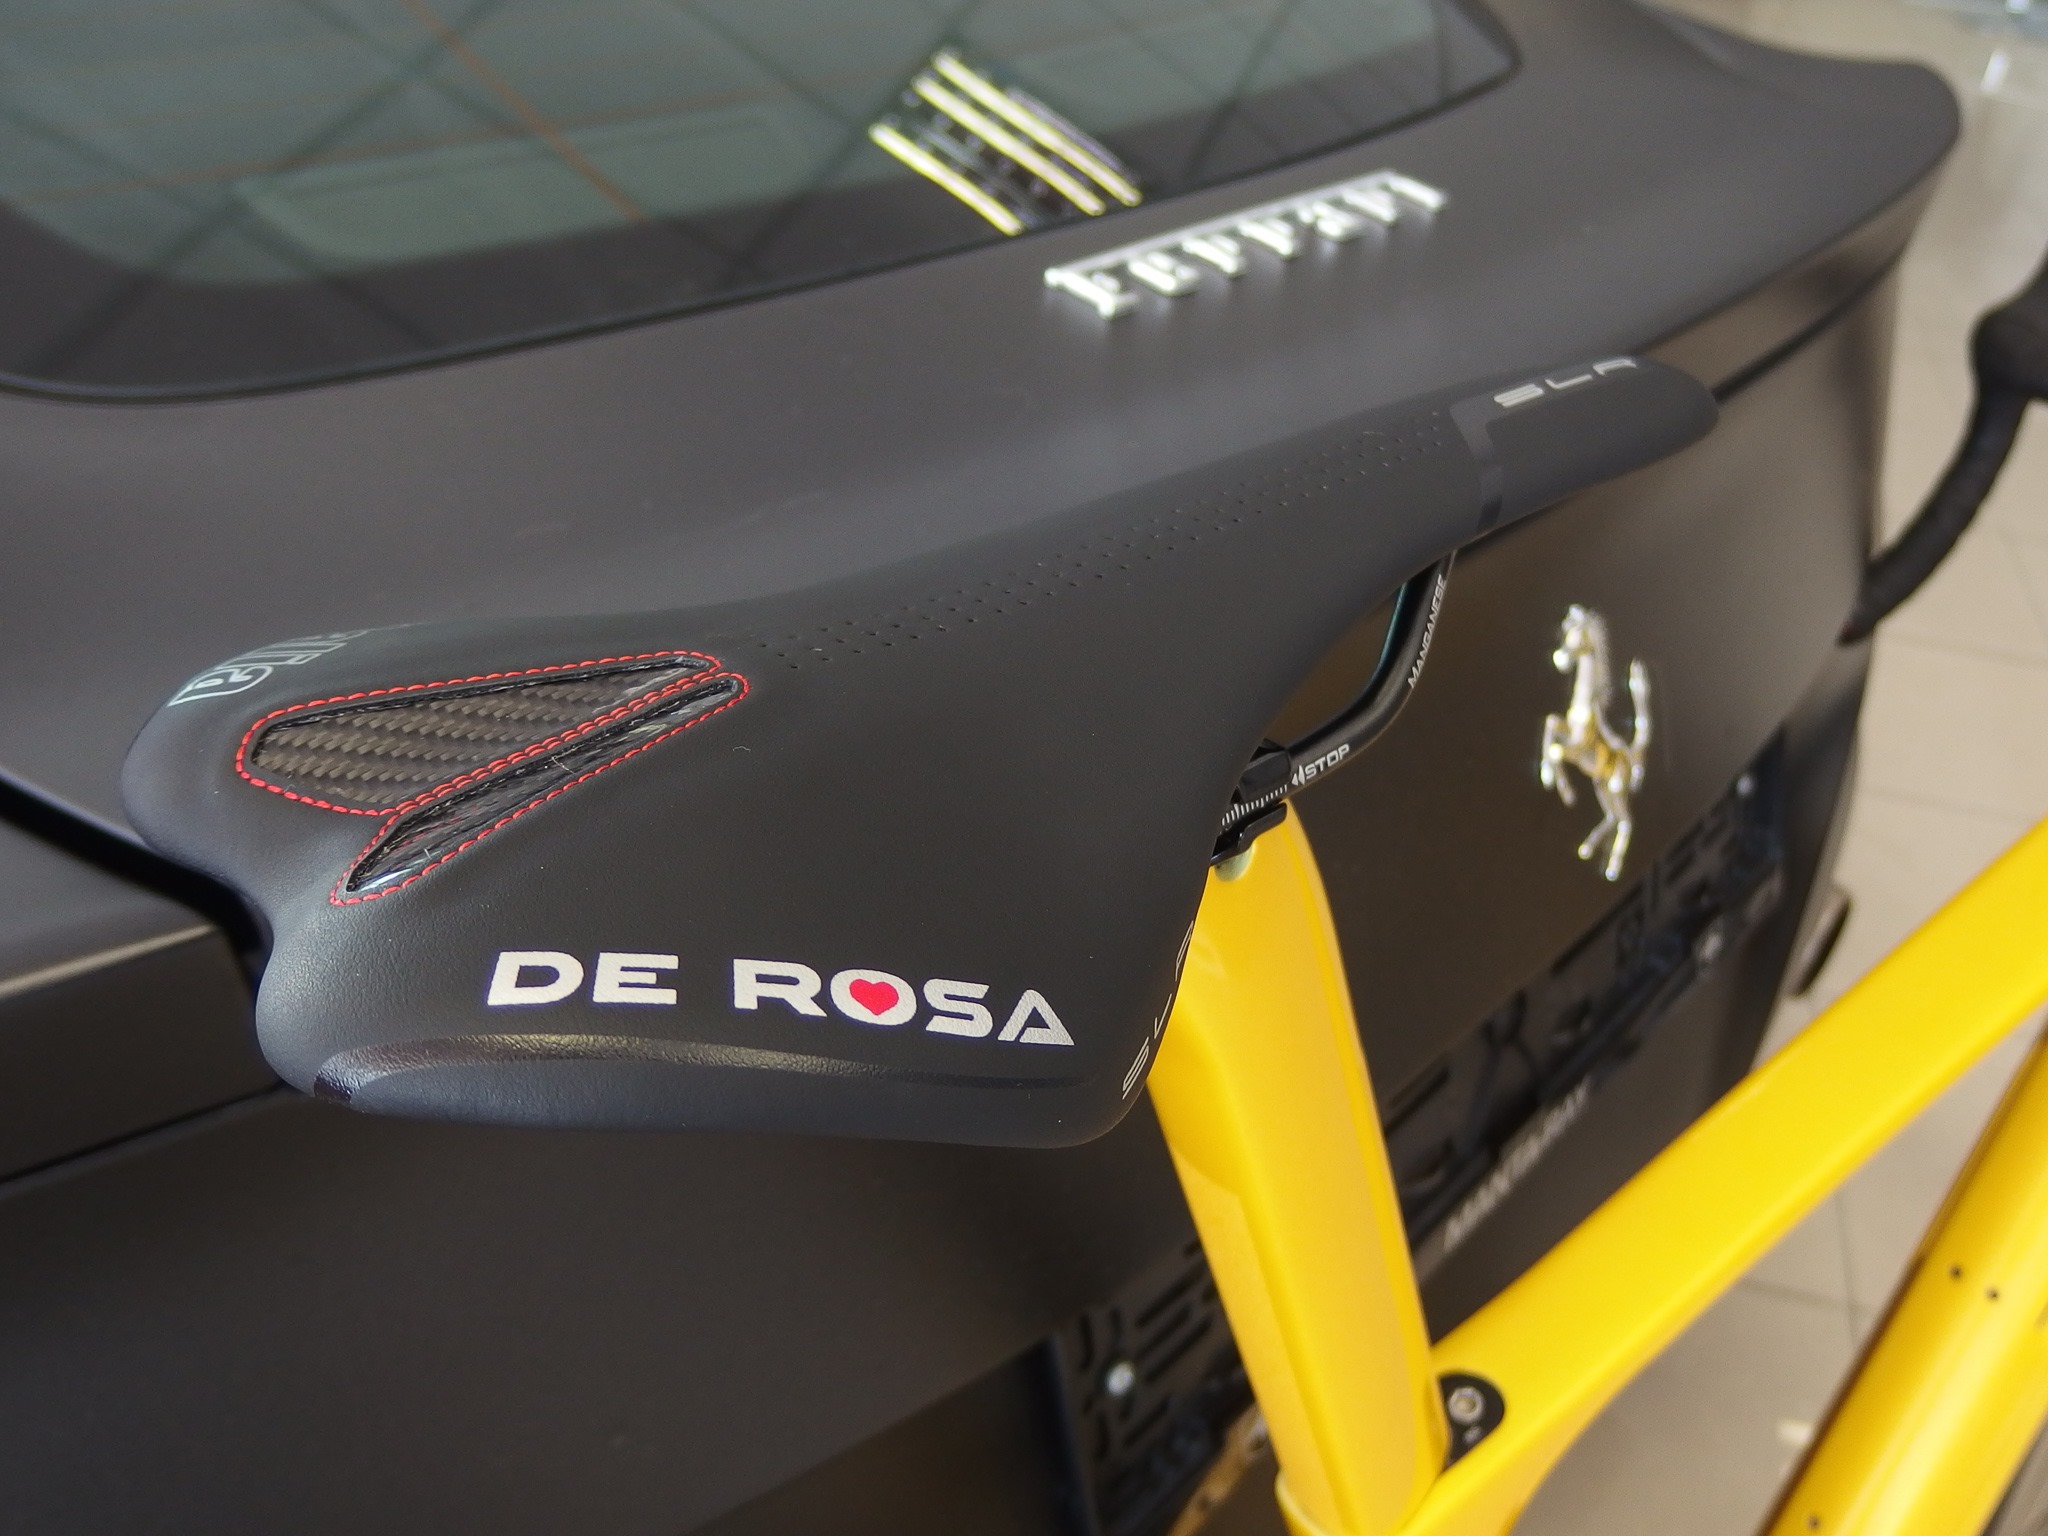 Kdyby si z toho náhodou někdo chtěl sednout, takříkajíc, na prdel, máme tady lepší volbu - Selle Italia SLR De Rosa!